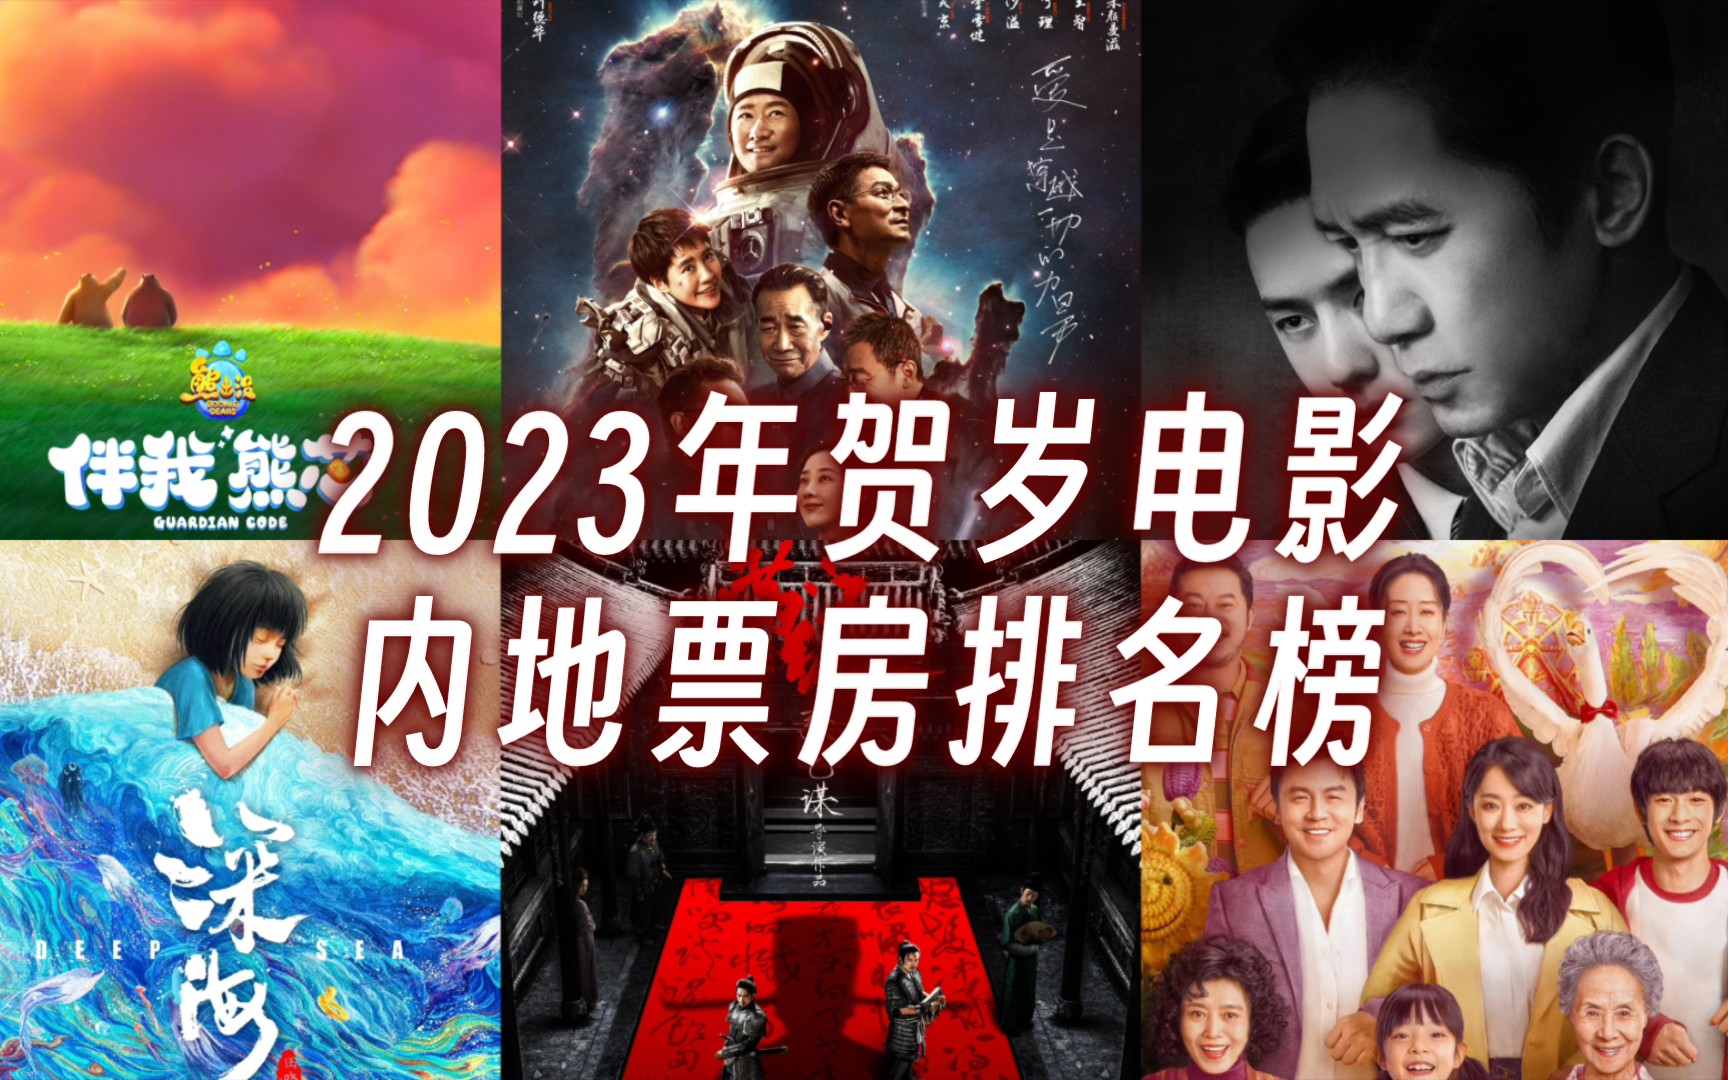 中国电影2023年度票房突破500亿元 国产影片包揽前十